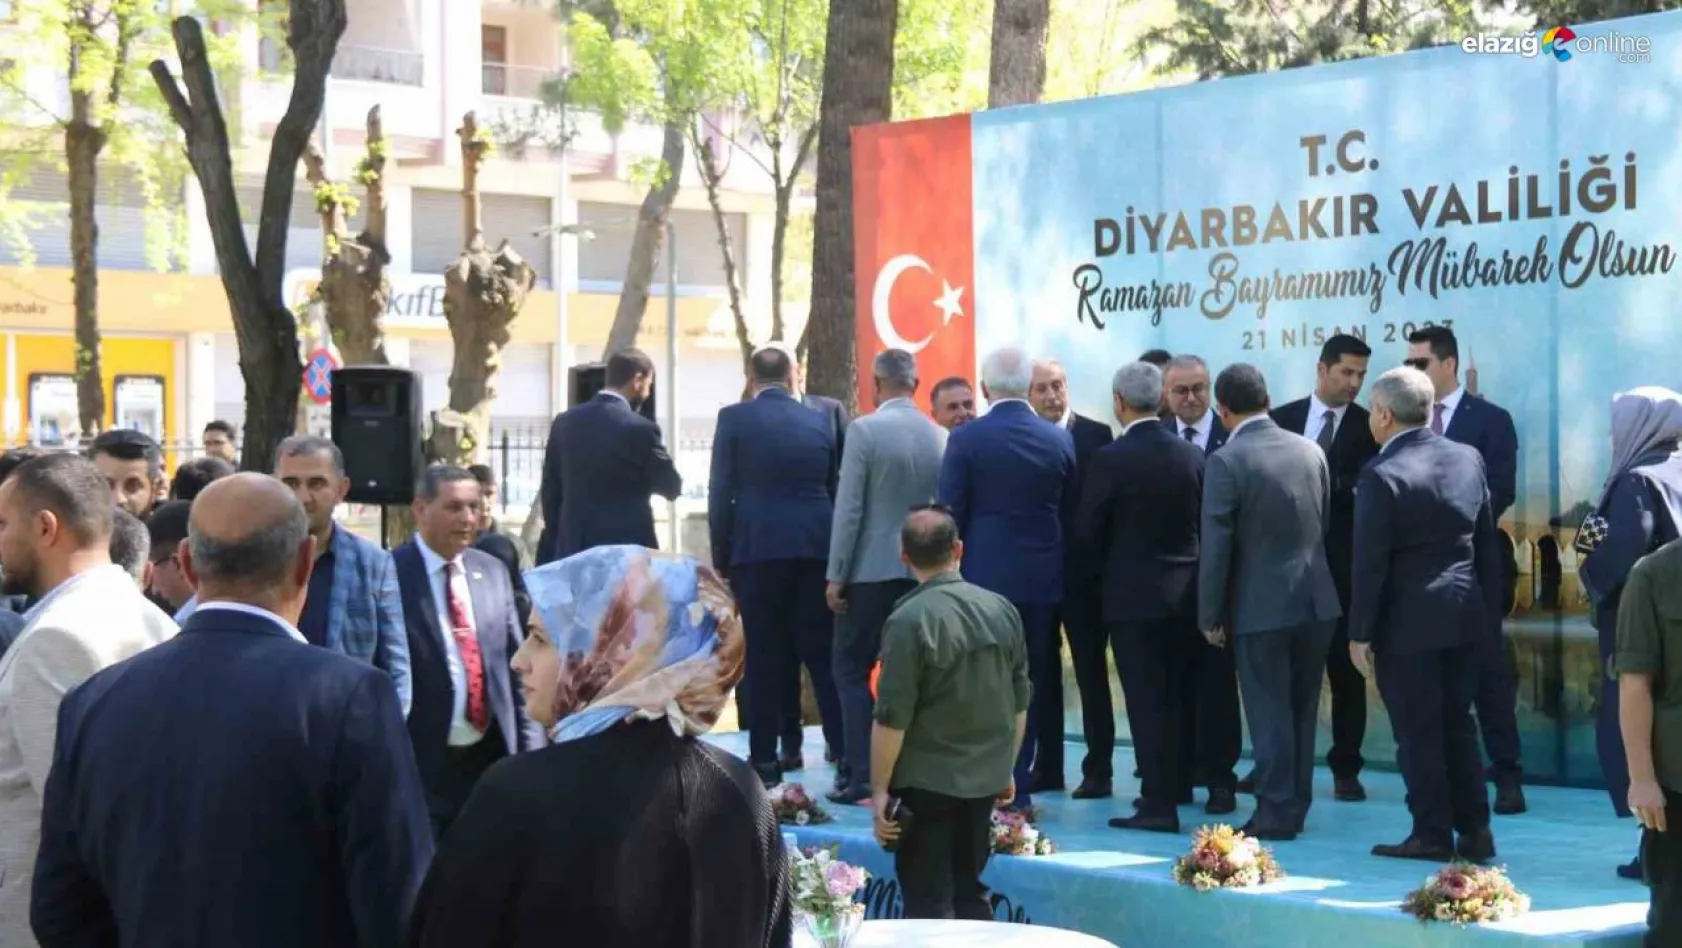 Diyarbakır Valisi Su, vatandaşlarla bayramlaştı